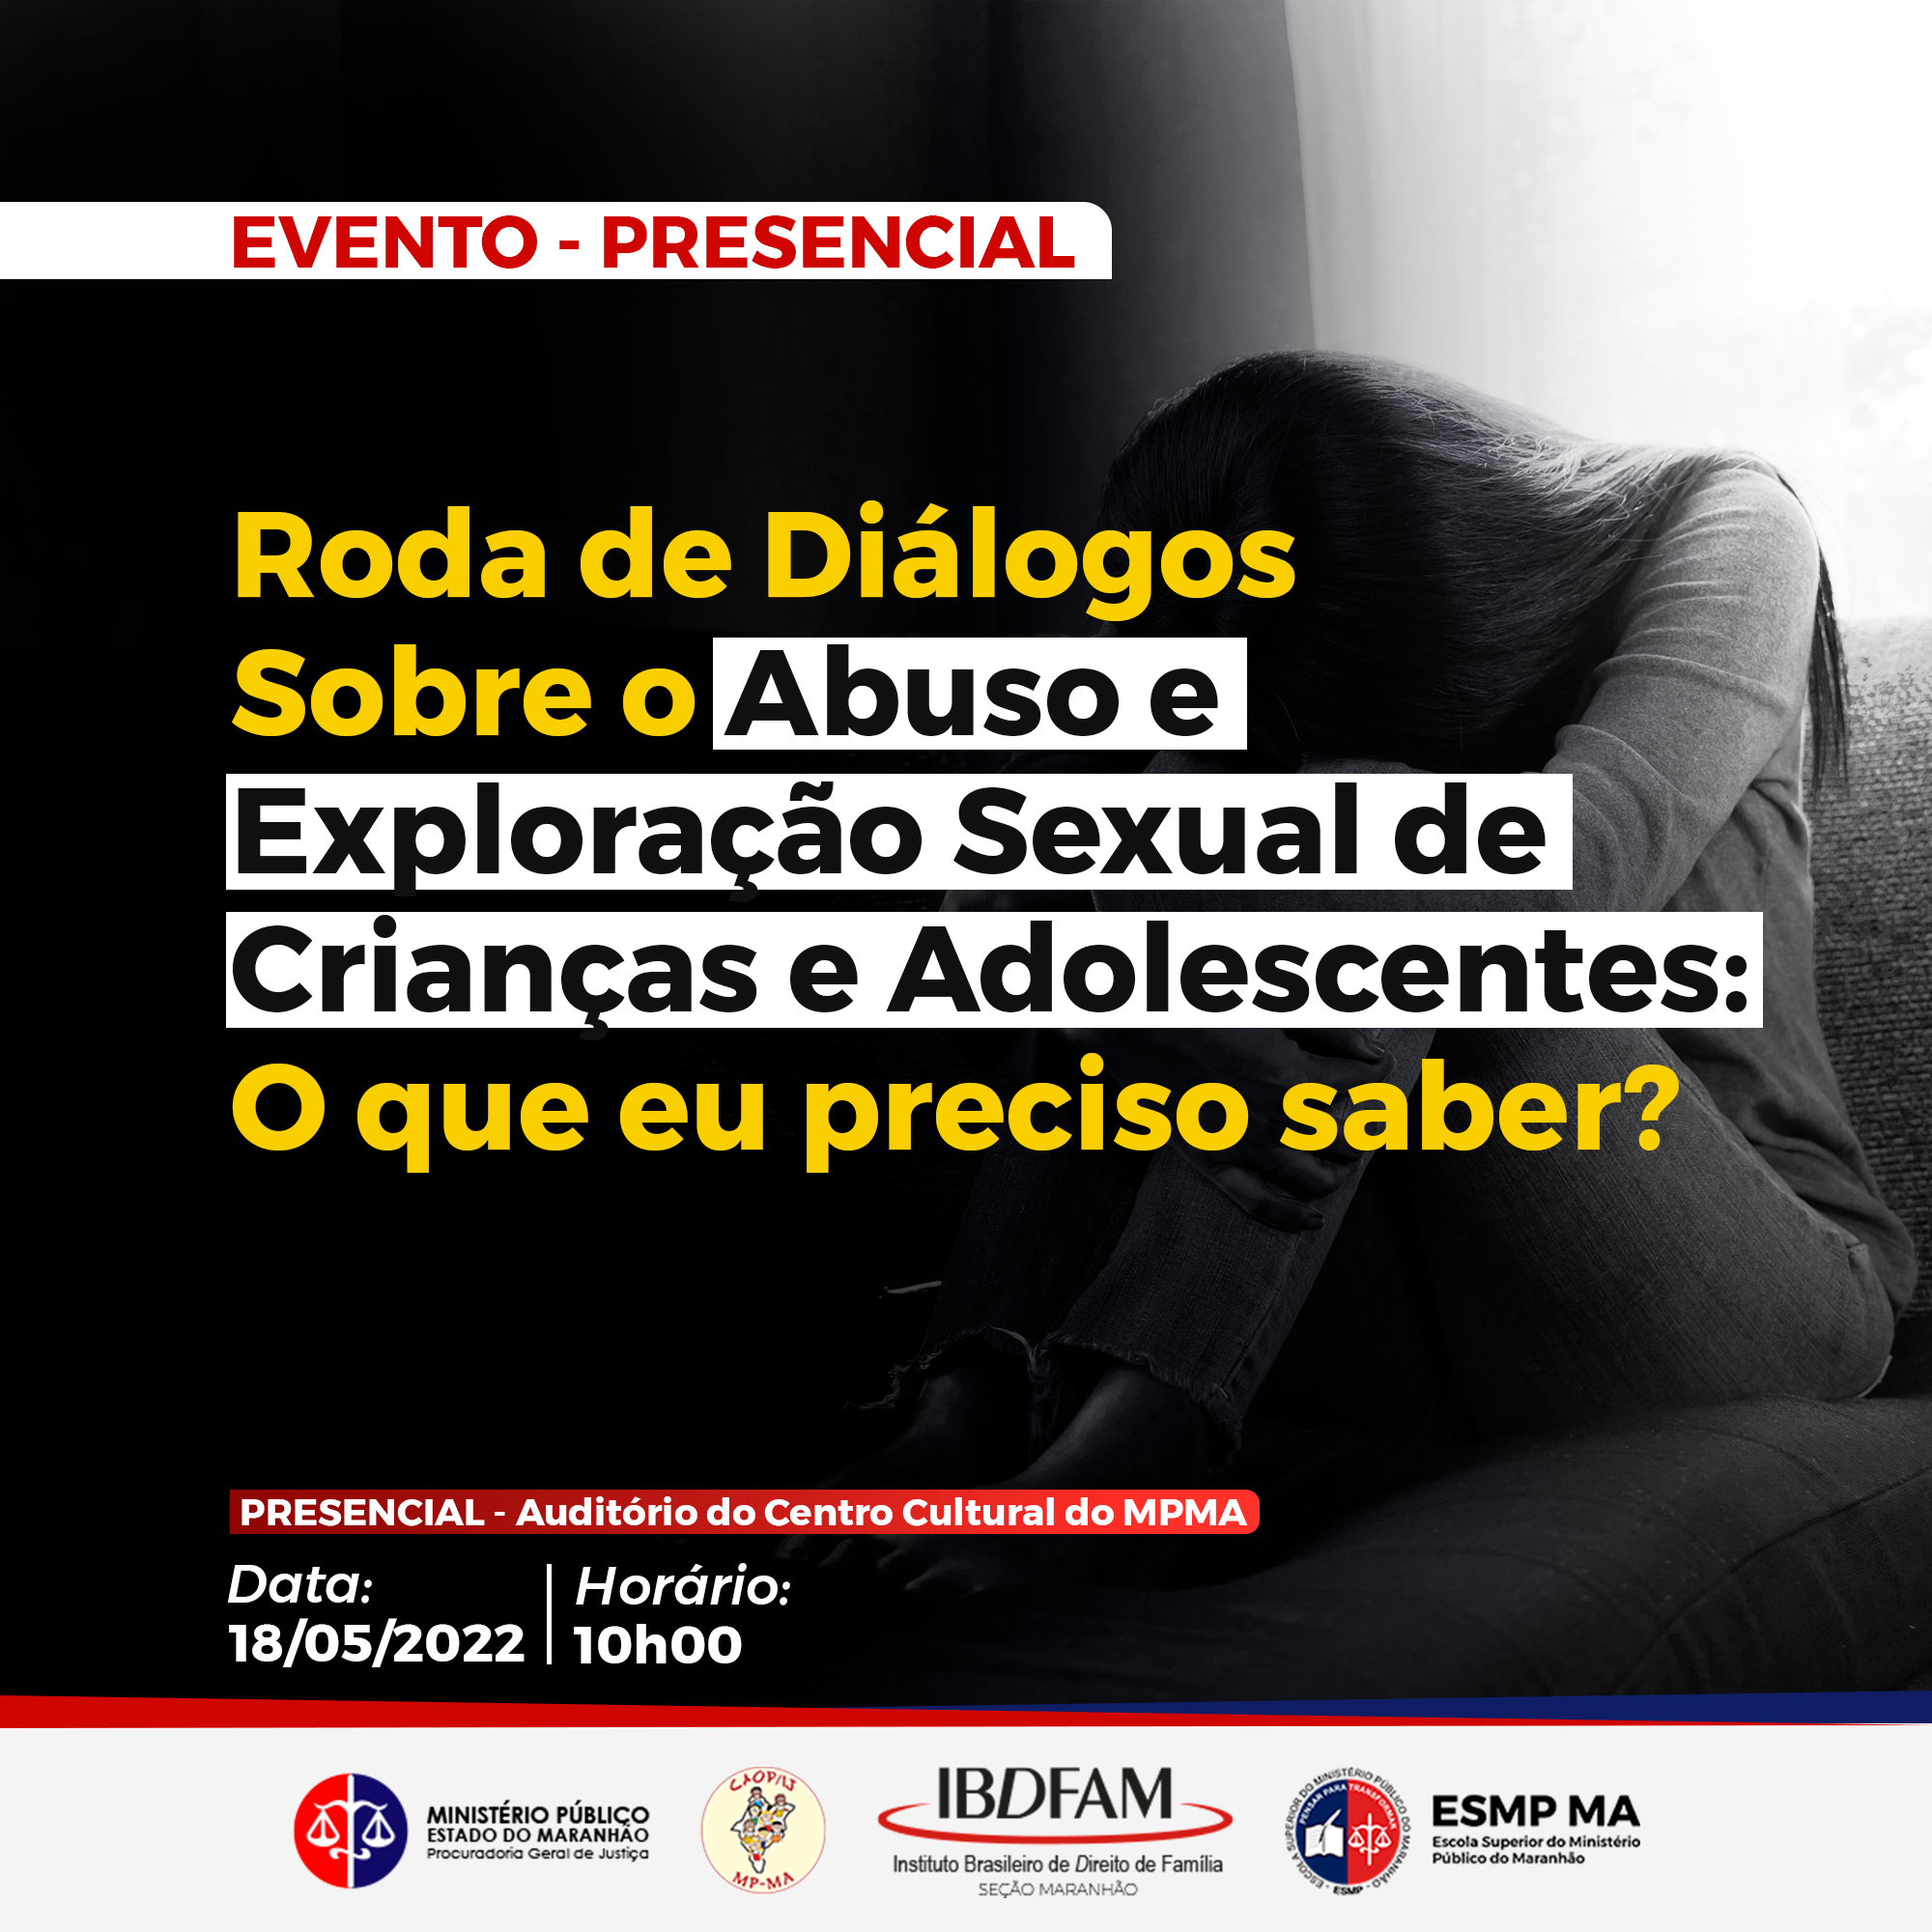 Roda de Diálogos sobre o tema: "Dia Nacional de Combate ao Abuso e Exploração Sexual de Crianças e Adolescentes"